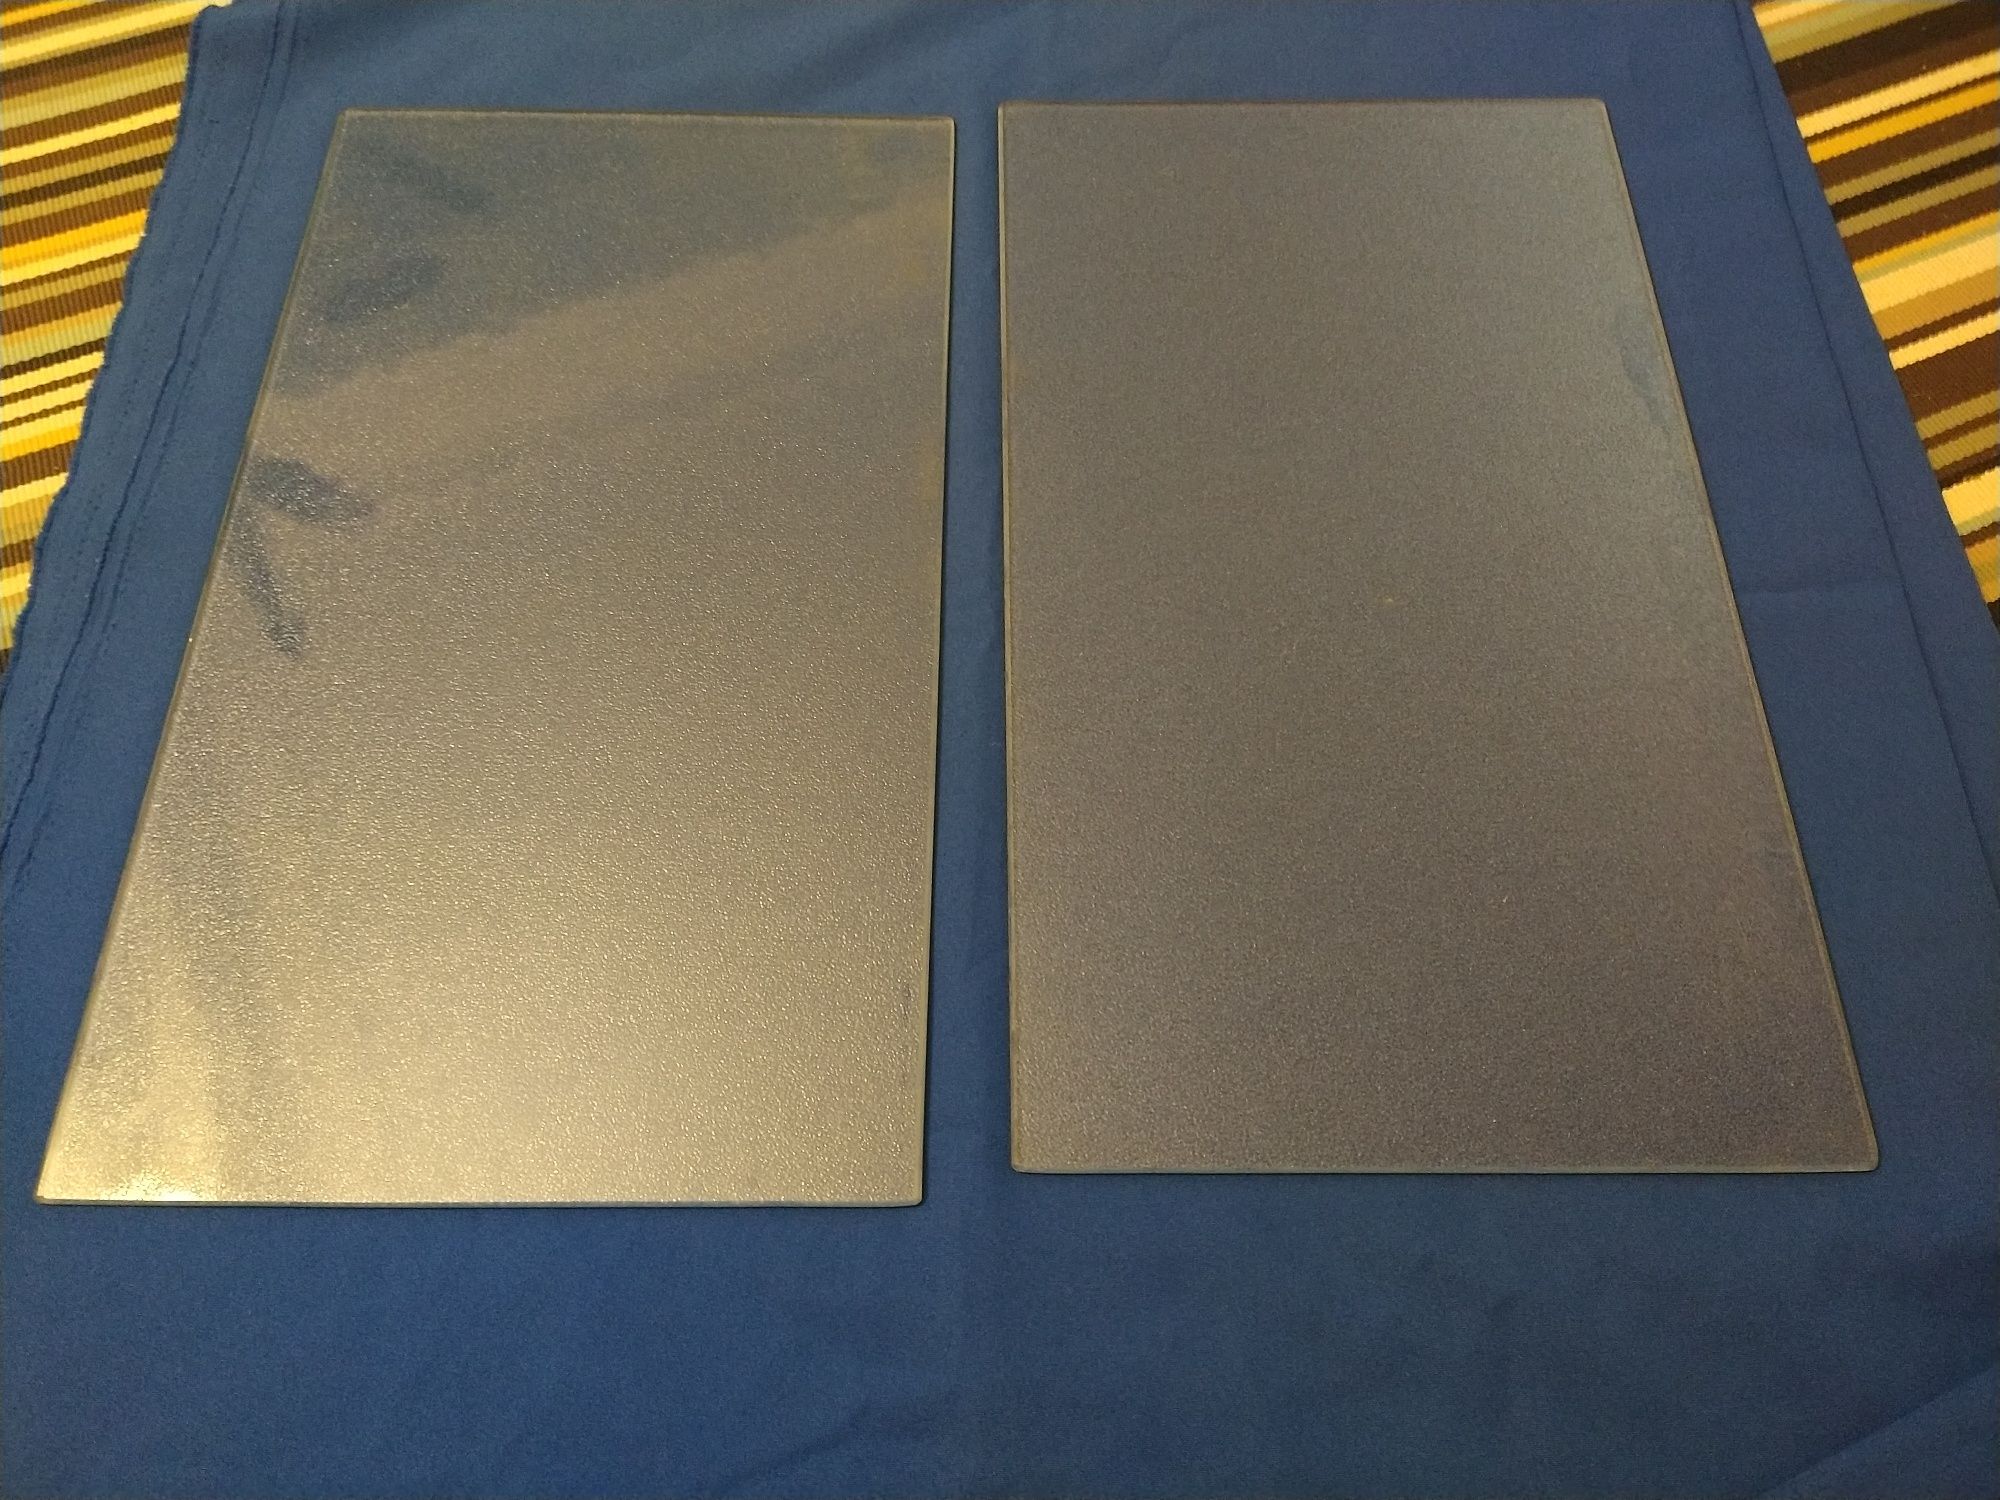 Placas de vidro (duas unidades) para prateleira